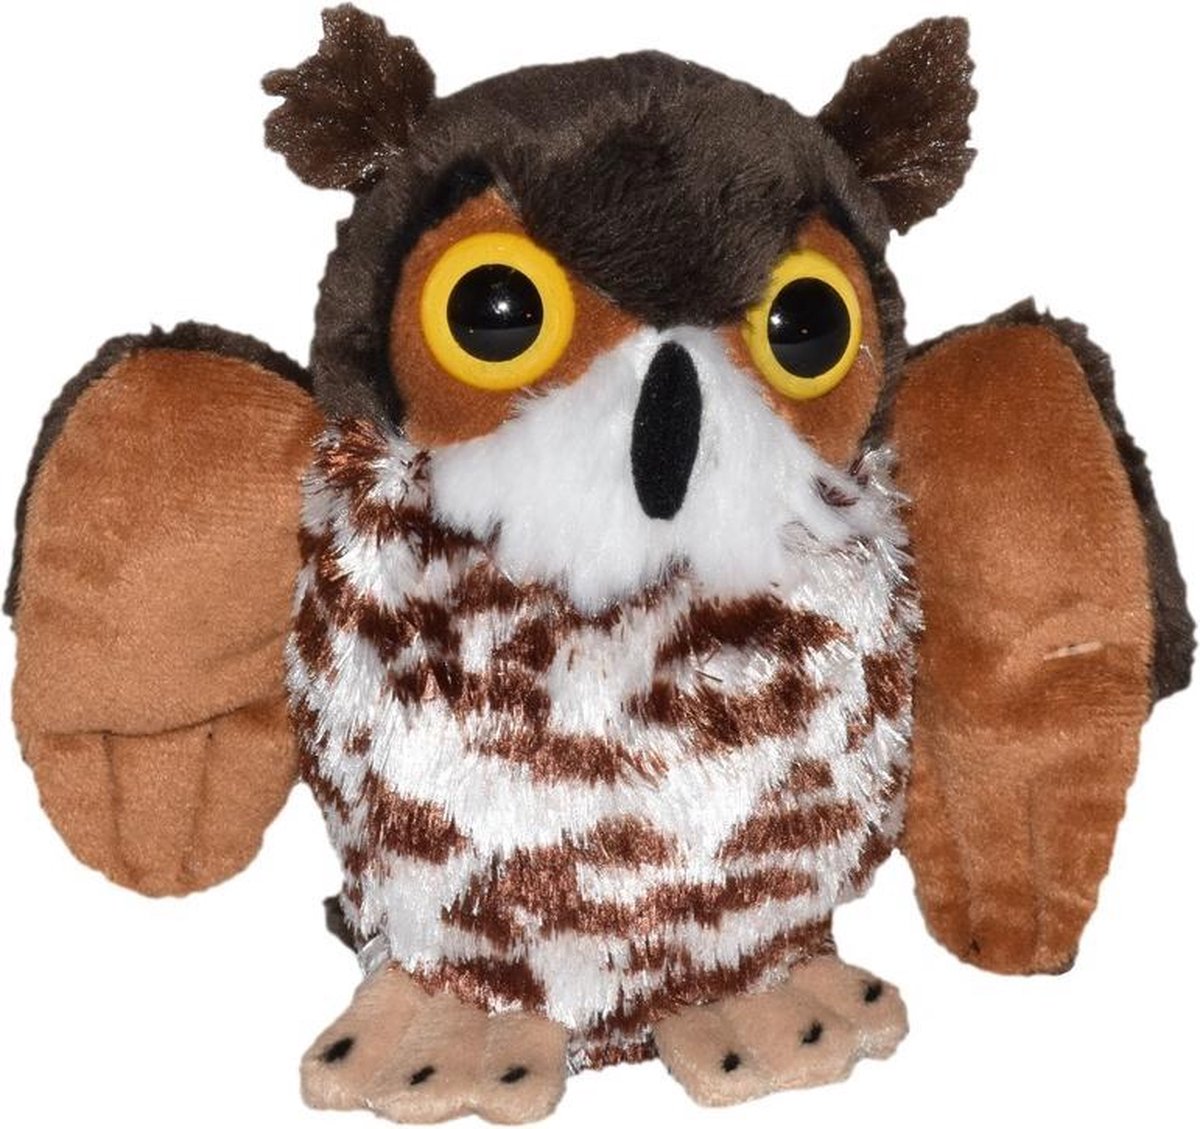 Pluche bruine uil vogel knuffel 12 cm - Uilen bosdieren knuffels - Speelgoed voor kinderen - Wild Republic